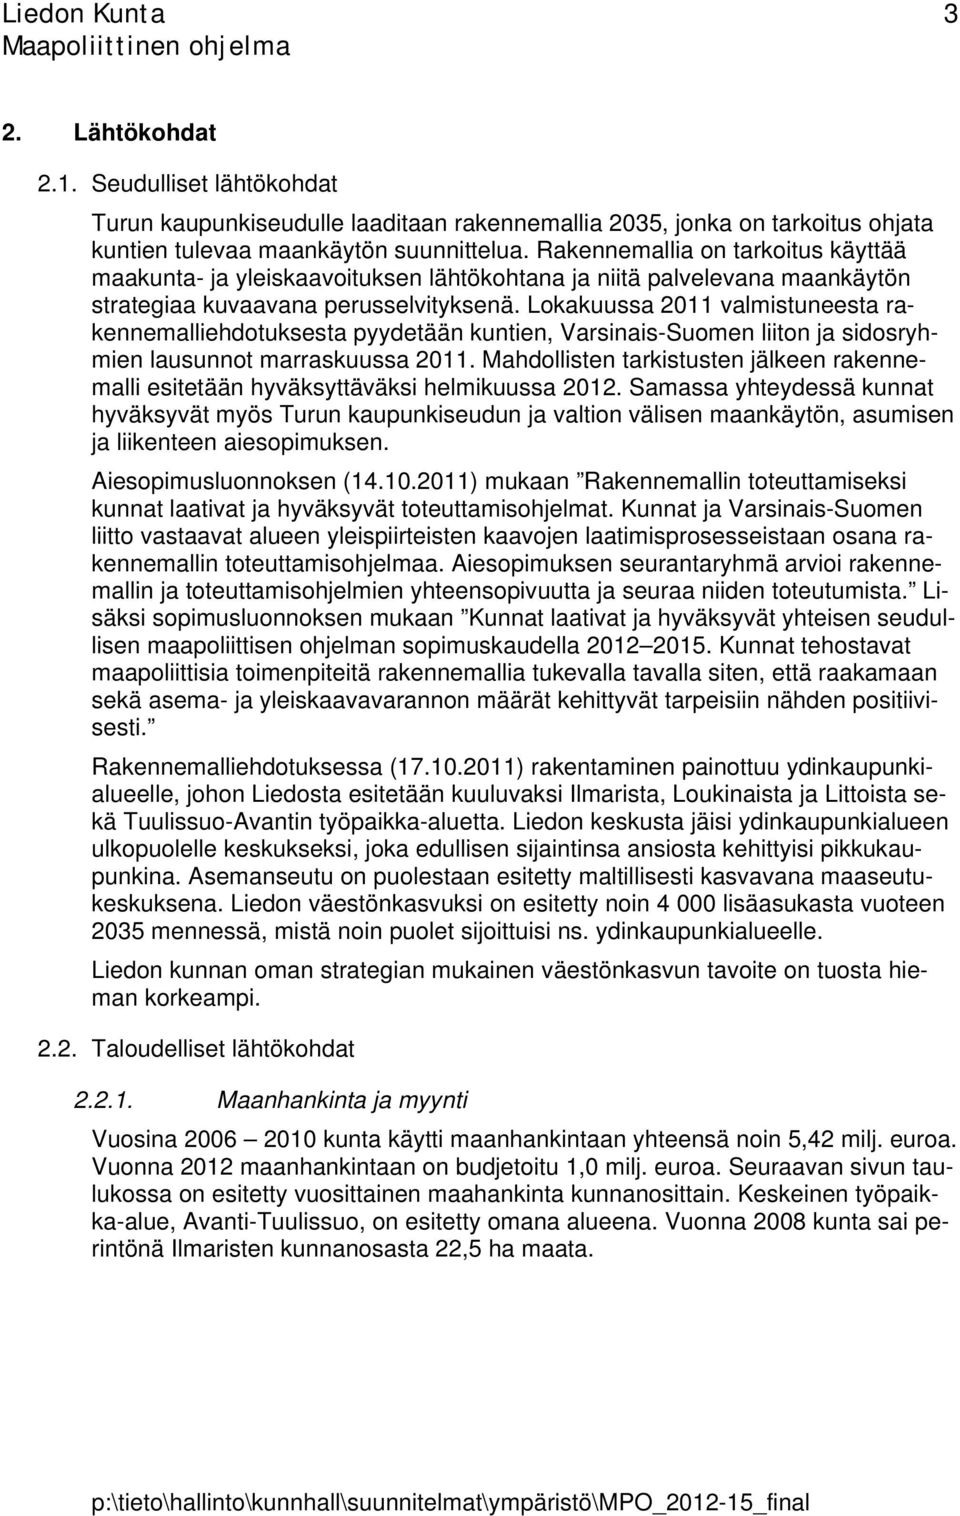 Lokakuussa 2011 valmistuneesta rakennemalliehdotuksesta pyydetään kuntien, Varsinais-Suomen liiton ja sidosryhmien lausunnot marraskuussa 2011.